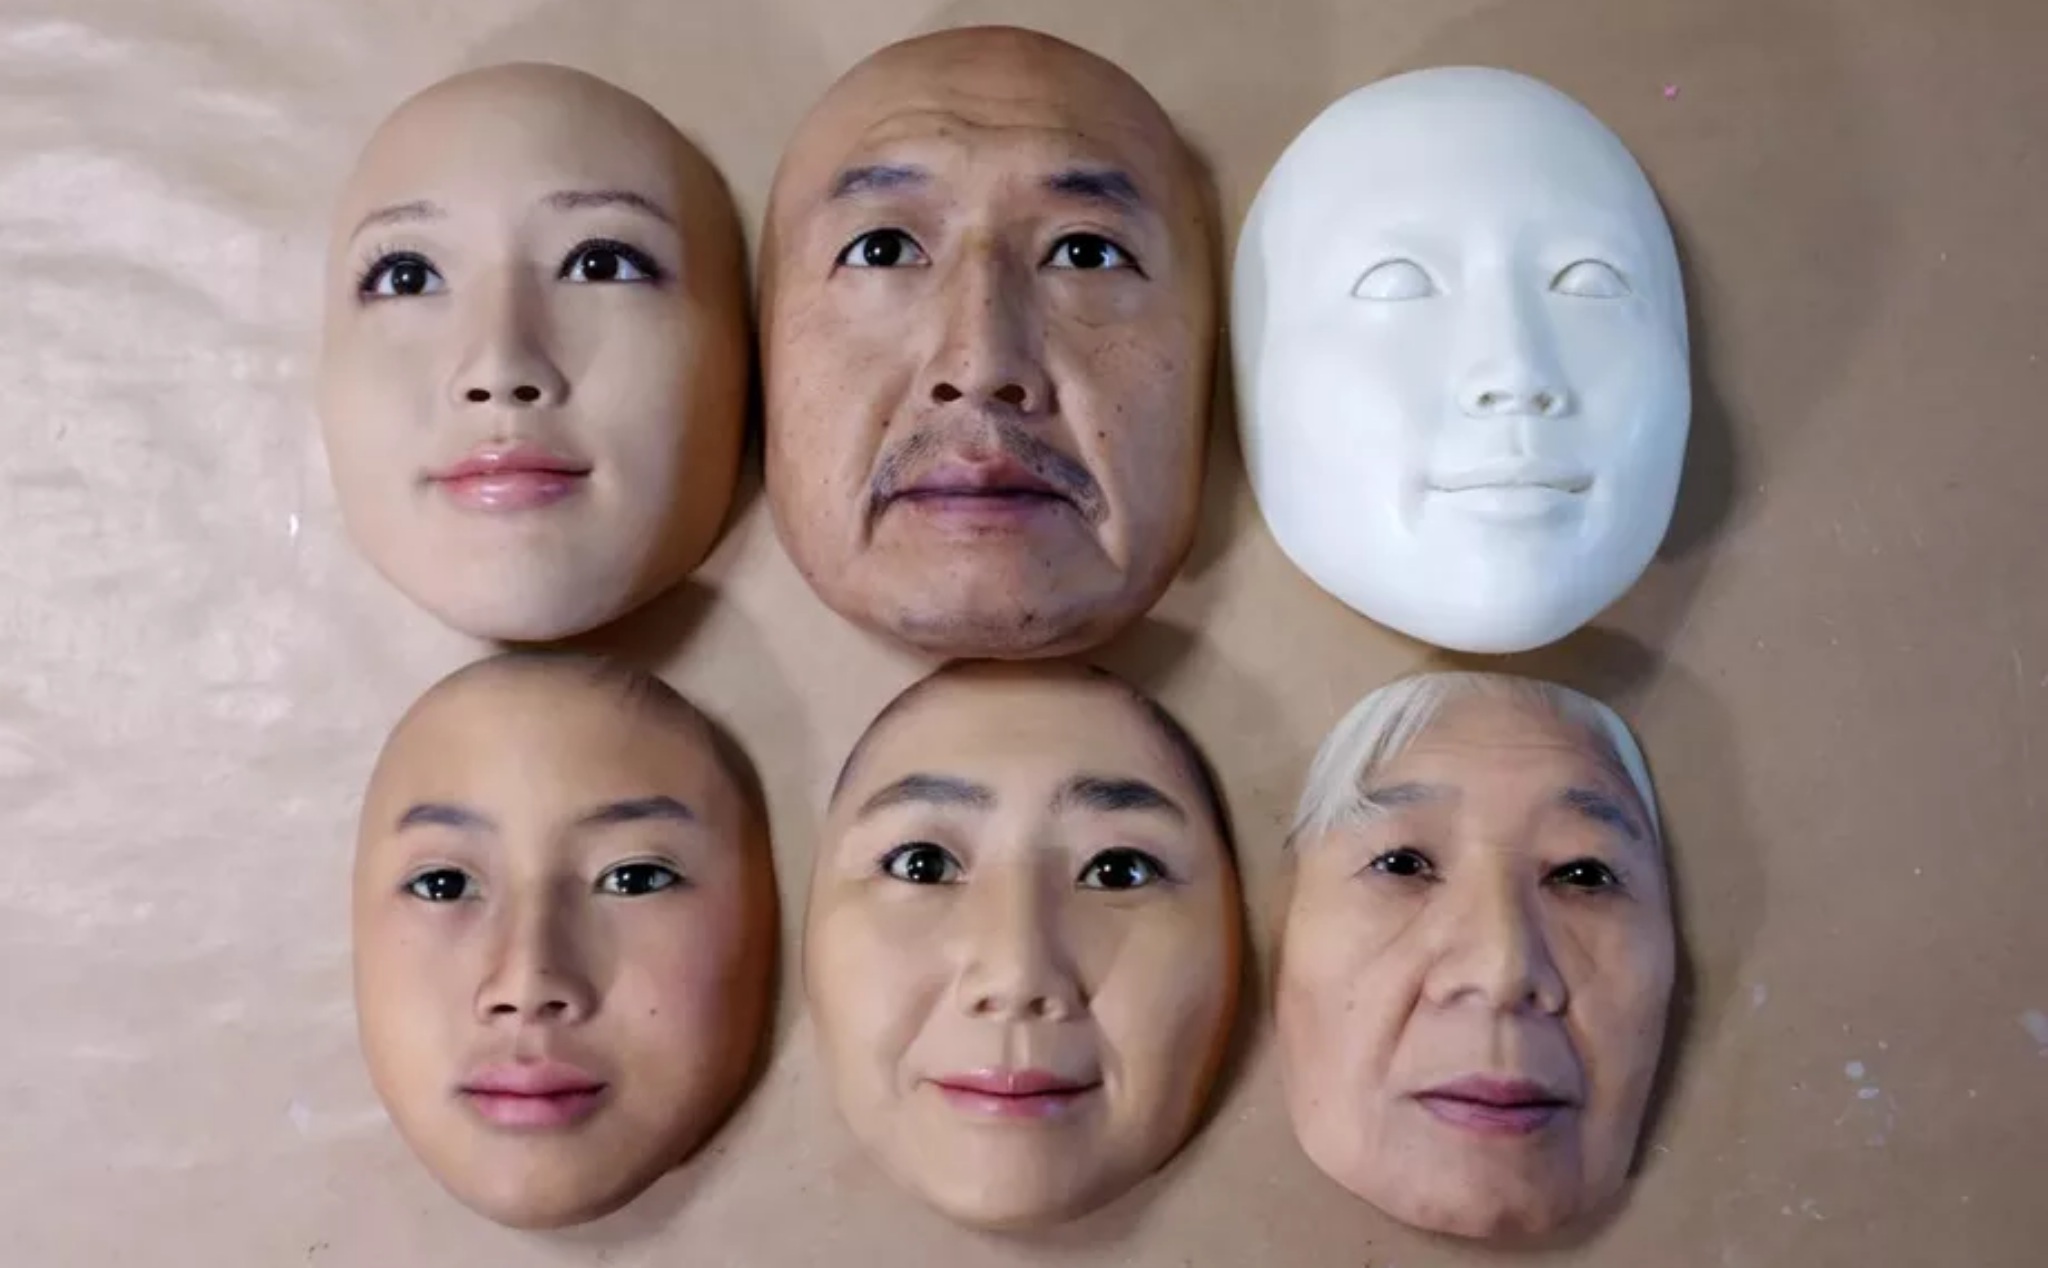 Một công ty của Nhật làm mặt nạ siêu chân thực giúp phát triển công nghệ nhận diện khuôn mặt